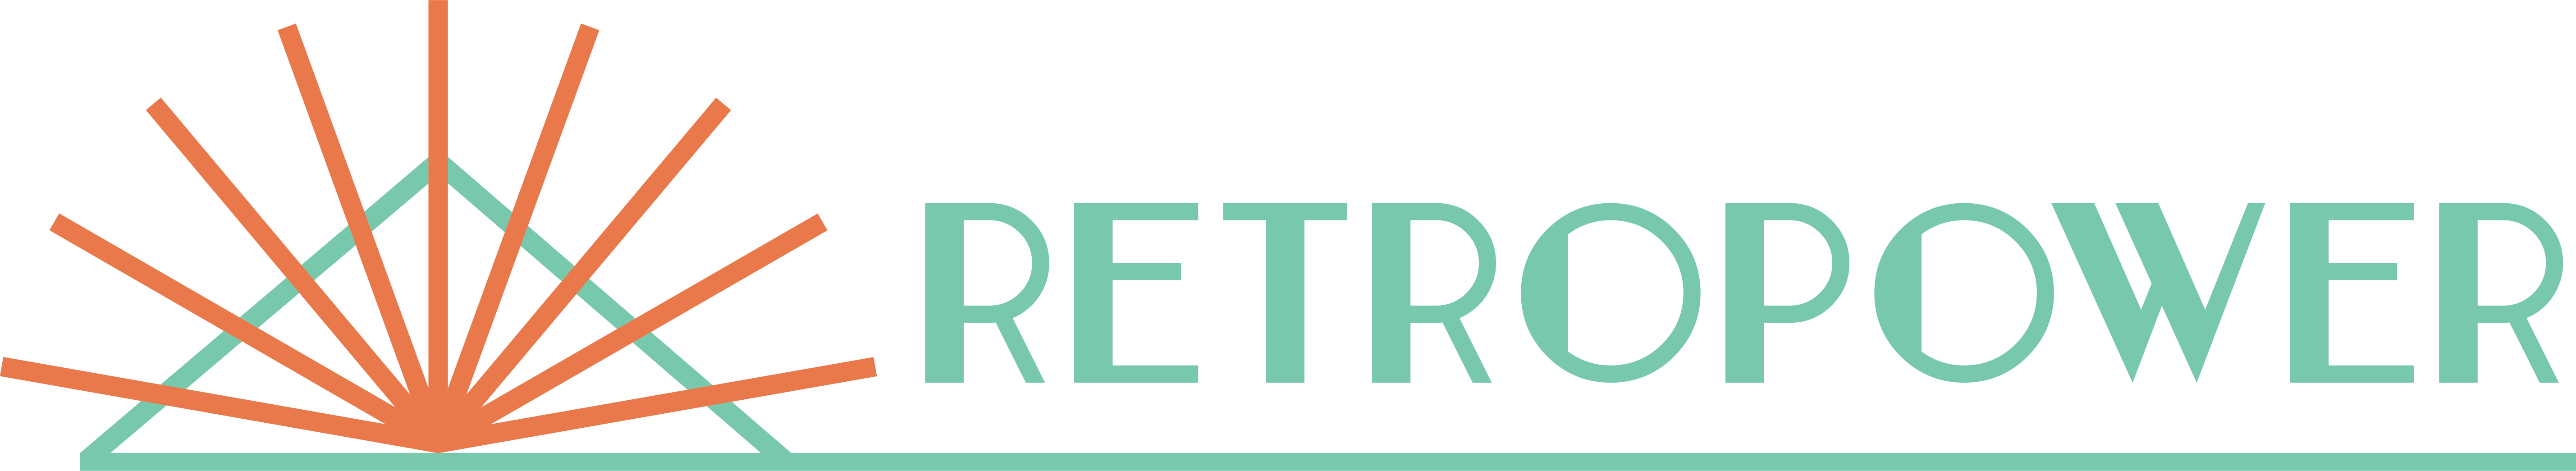 Retropower-logo-CMYK_(full colour-horiz1)